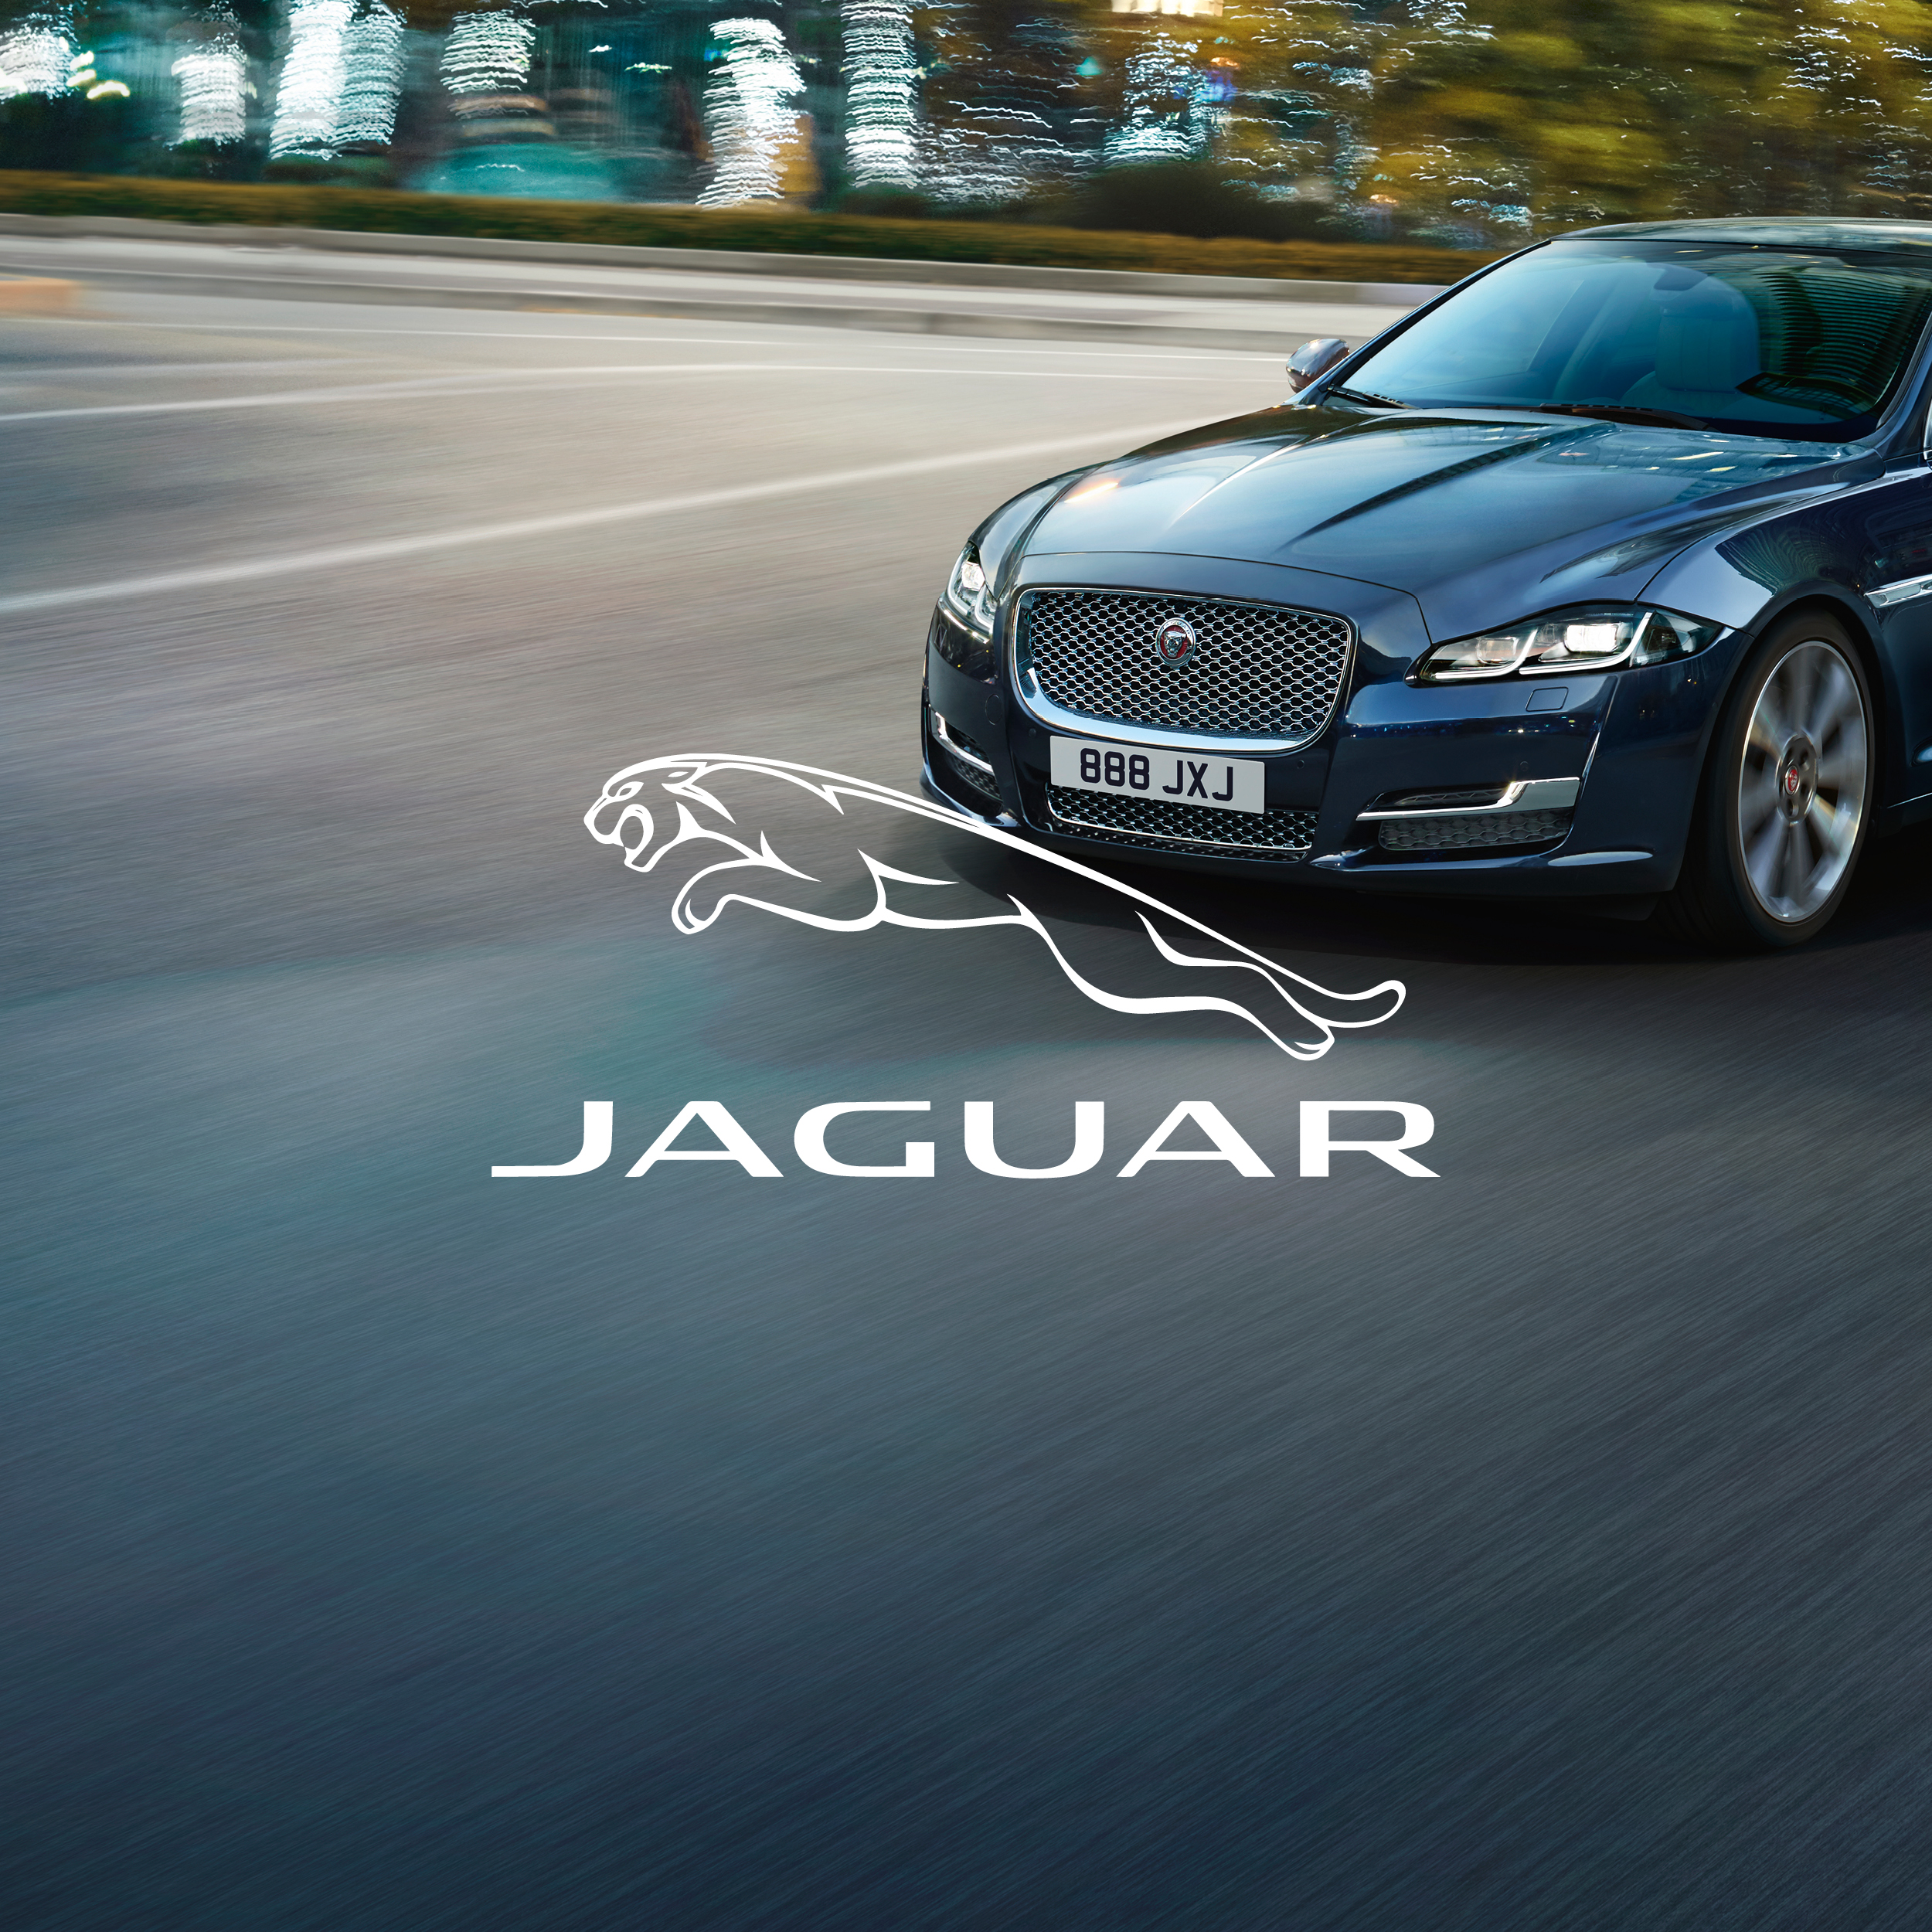 Selezione dei progetti grafici - jaguar Settore automotive